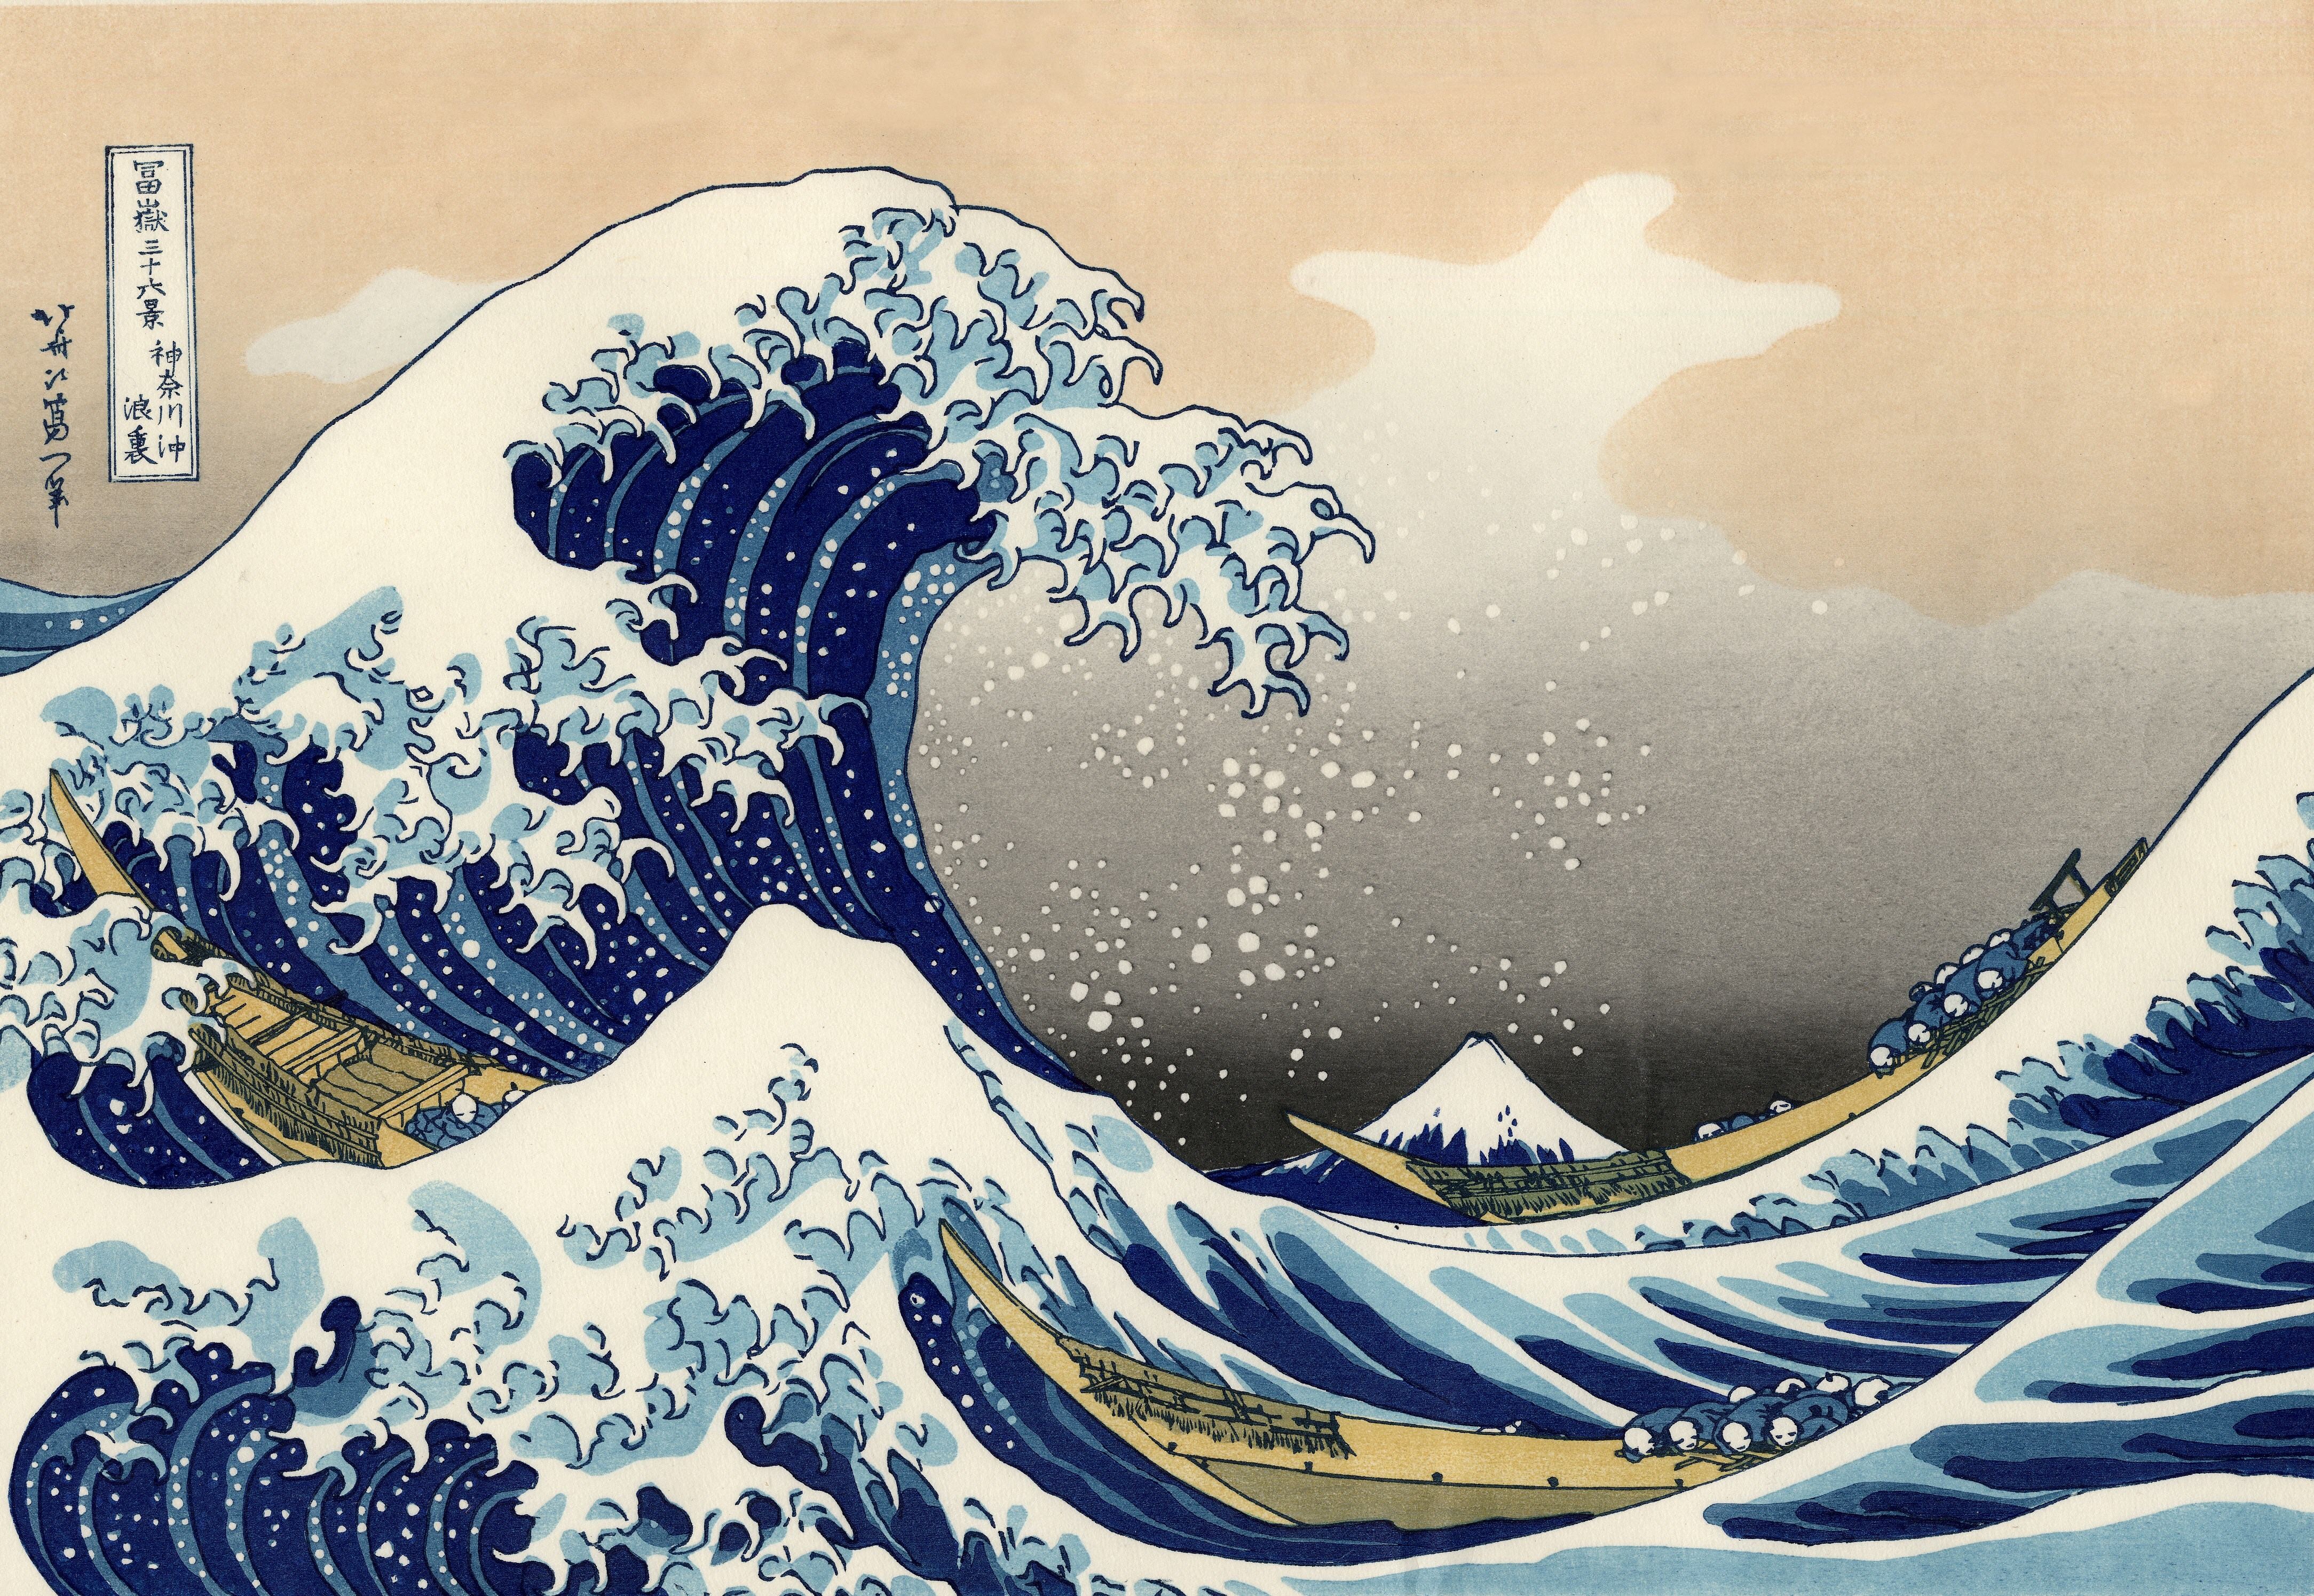 The Great Wave Off Kanagawa Painting Japanese Waves Classic Art Ukiyo E 4335x2990